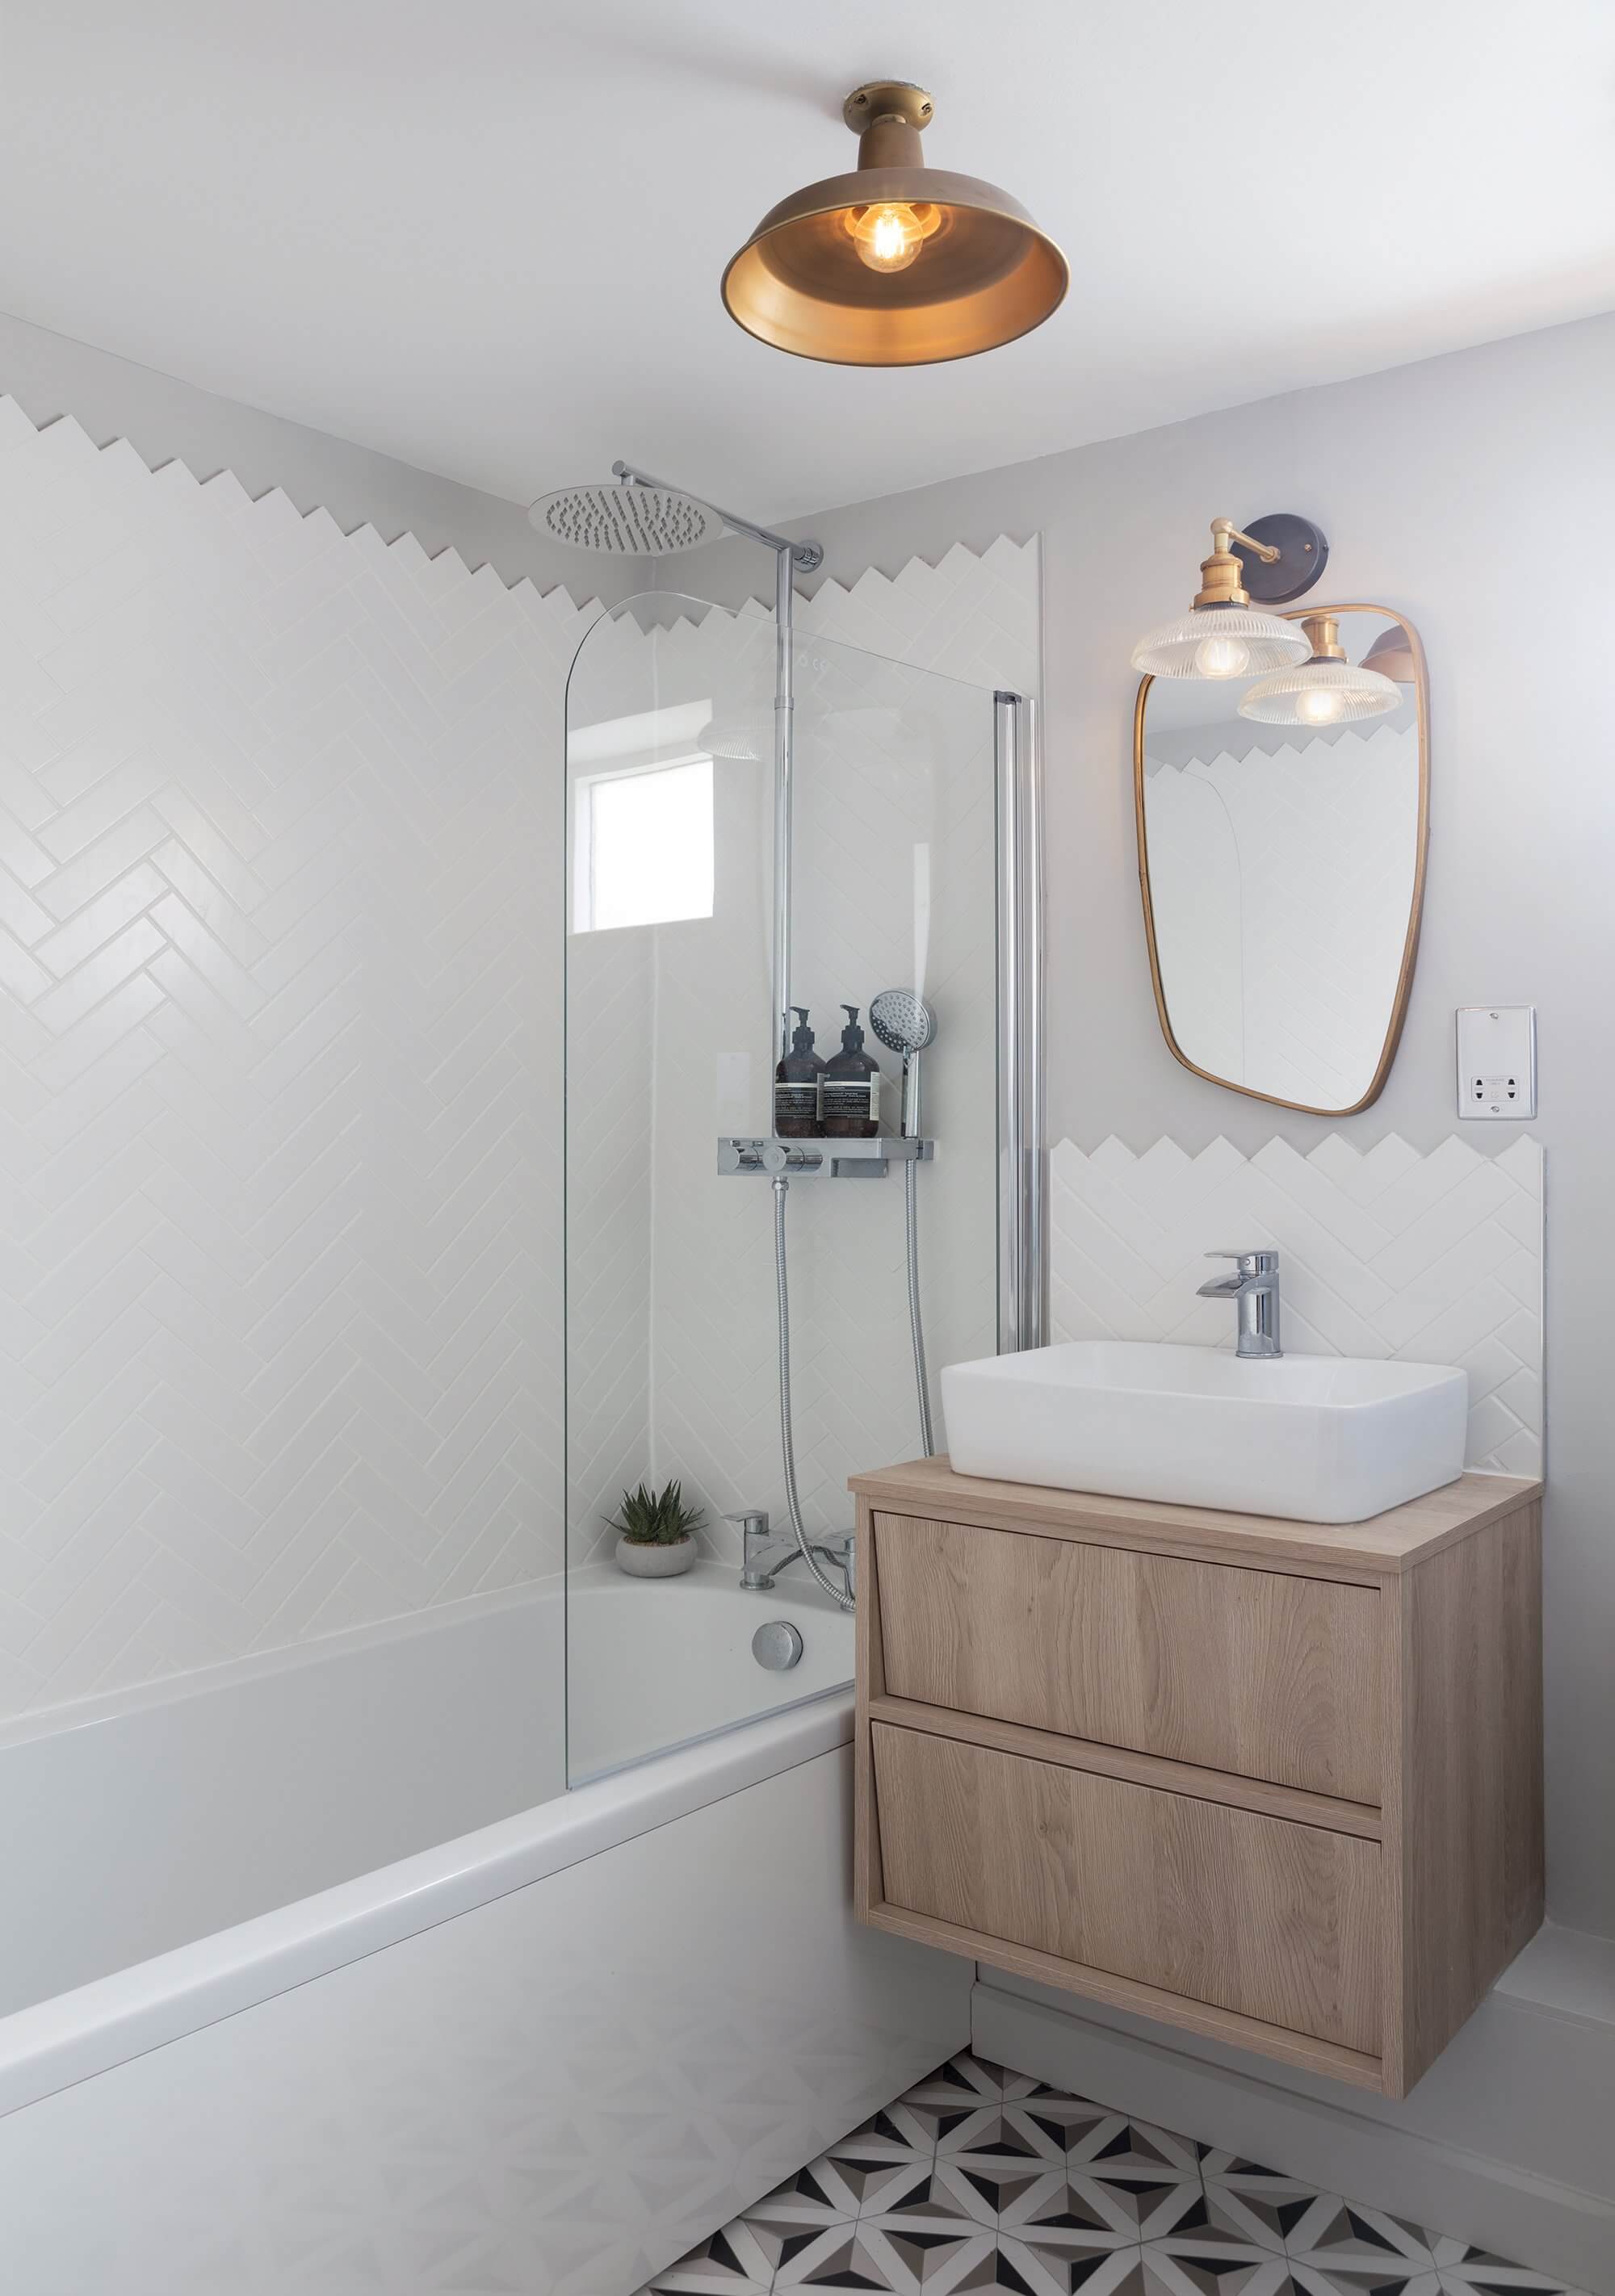 Bathroom scheme by interior designer Shanade McAllister Fisher